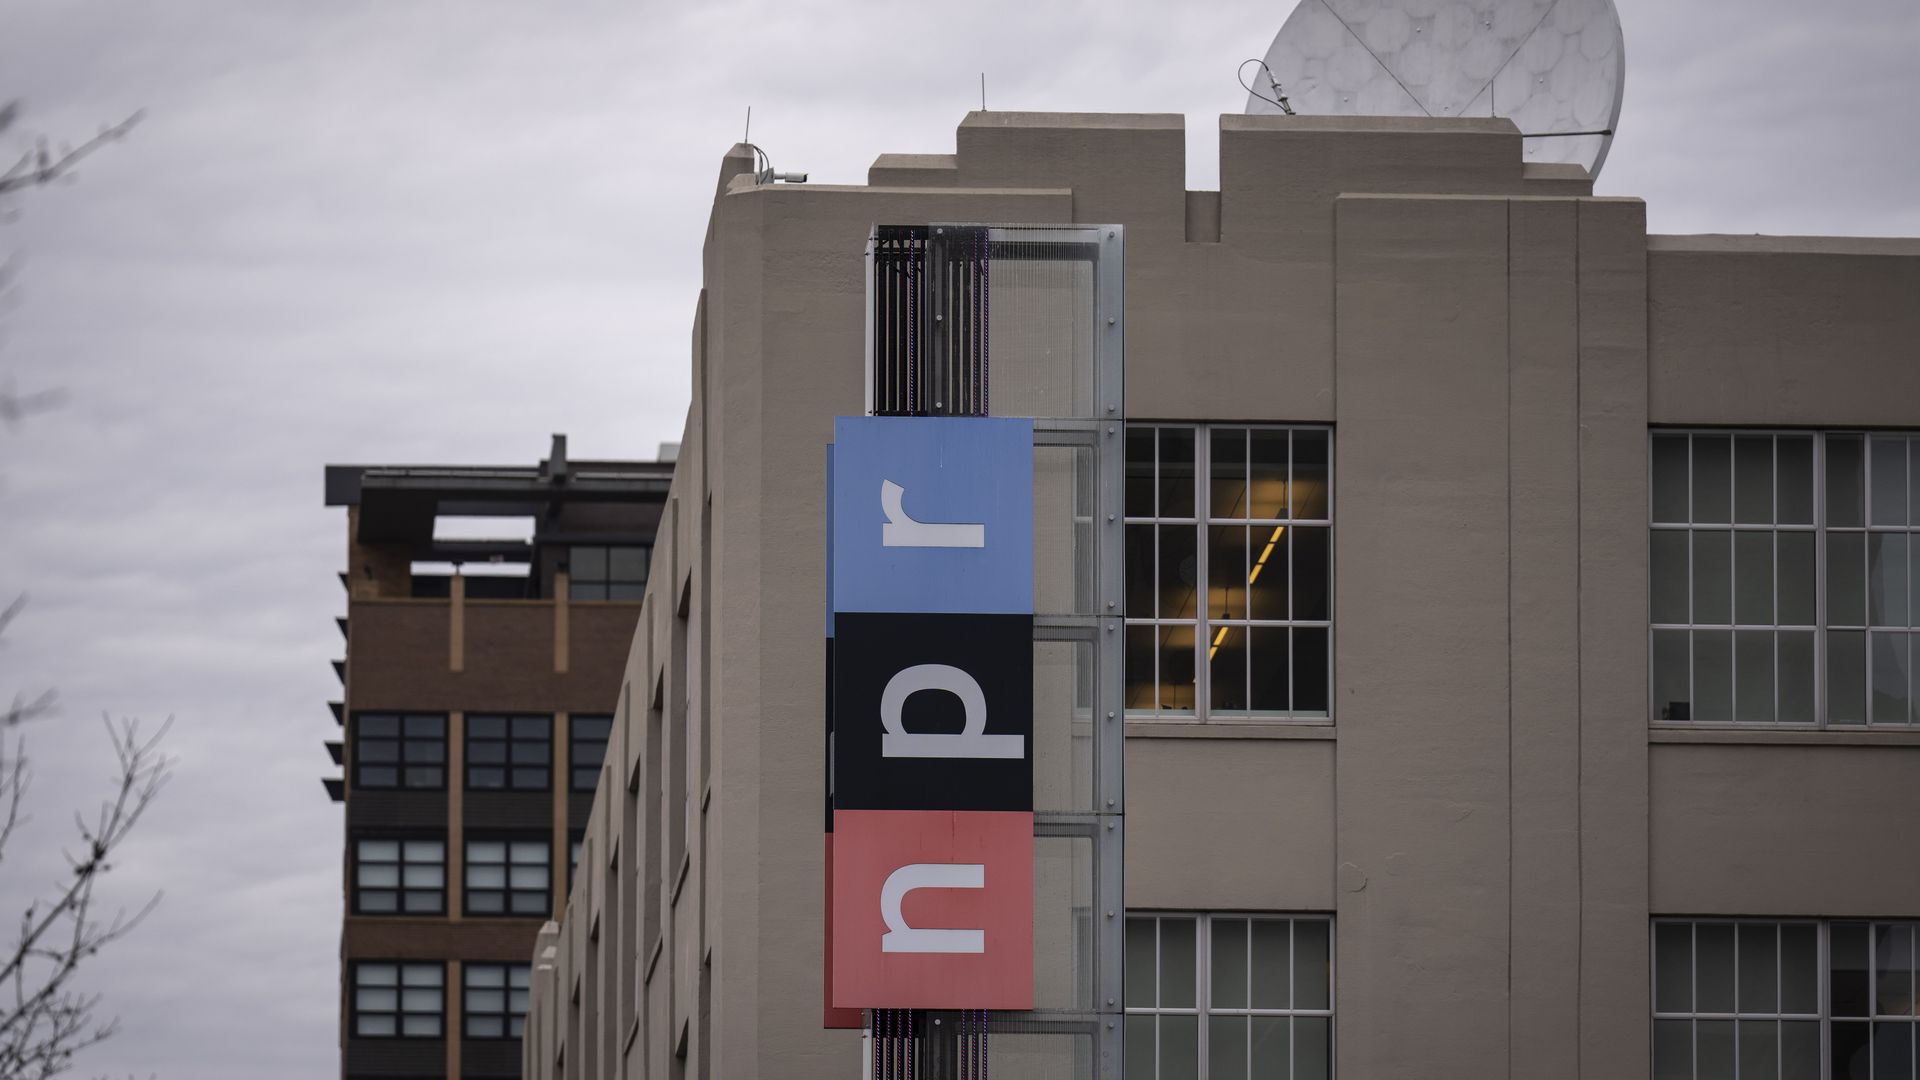 NPR building